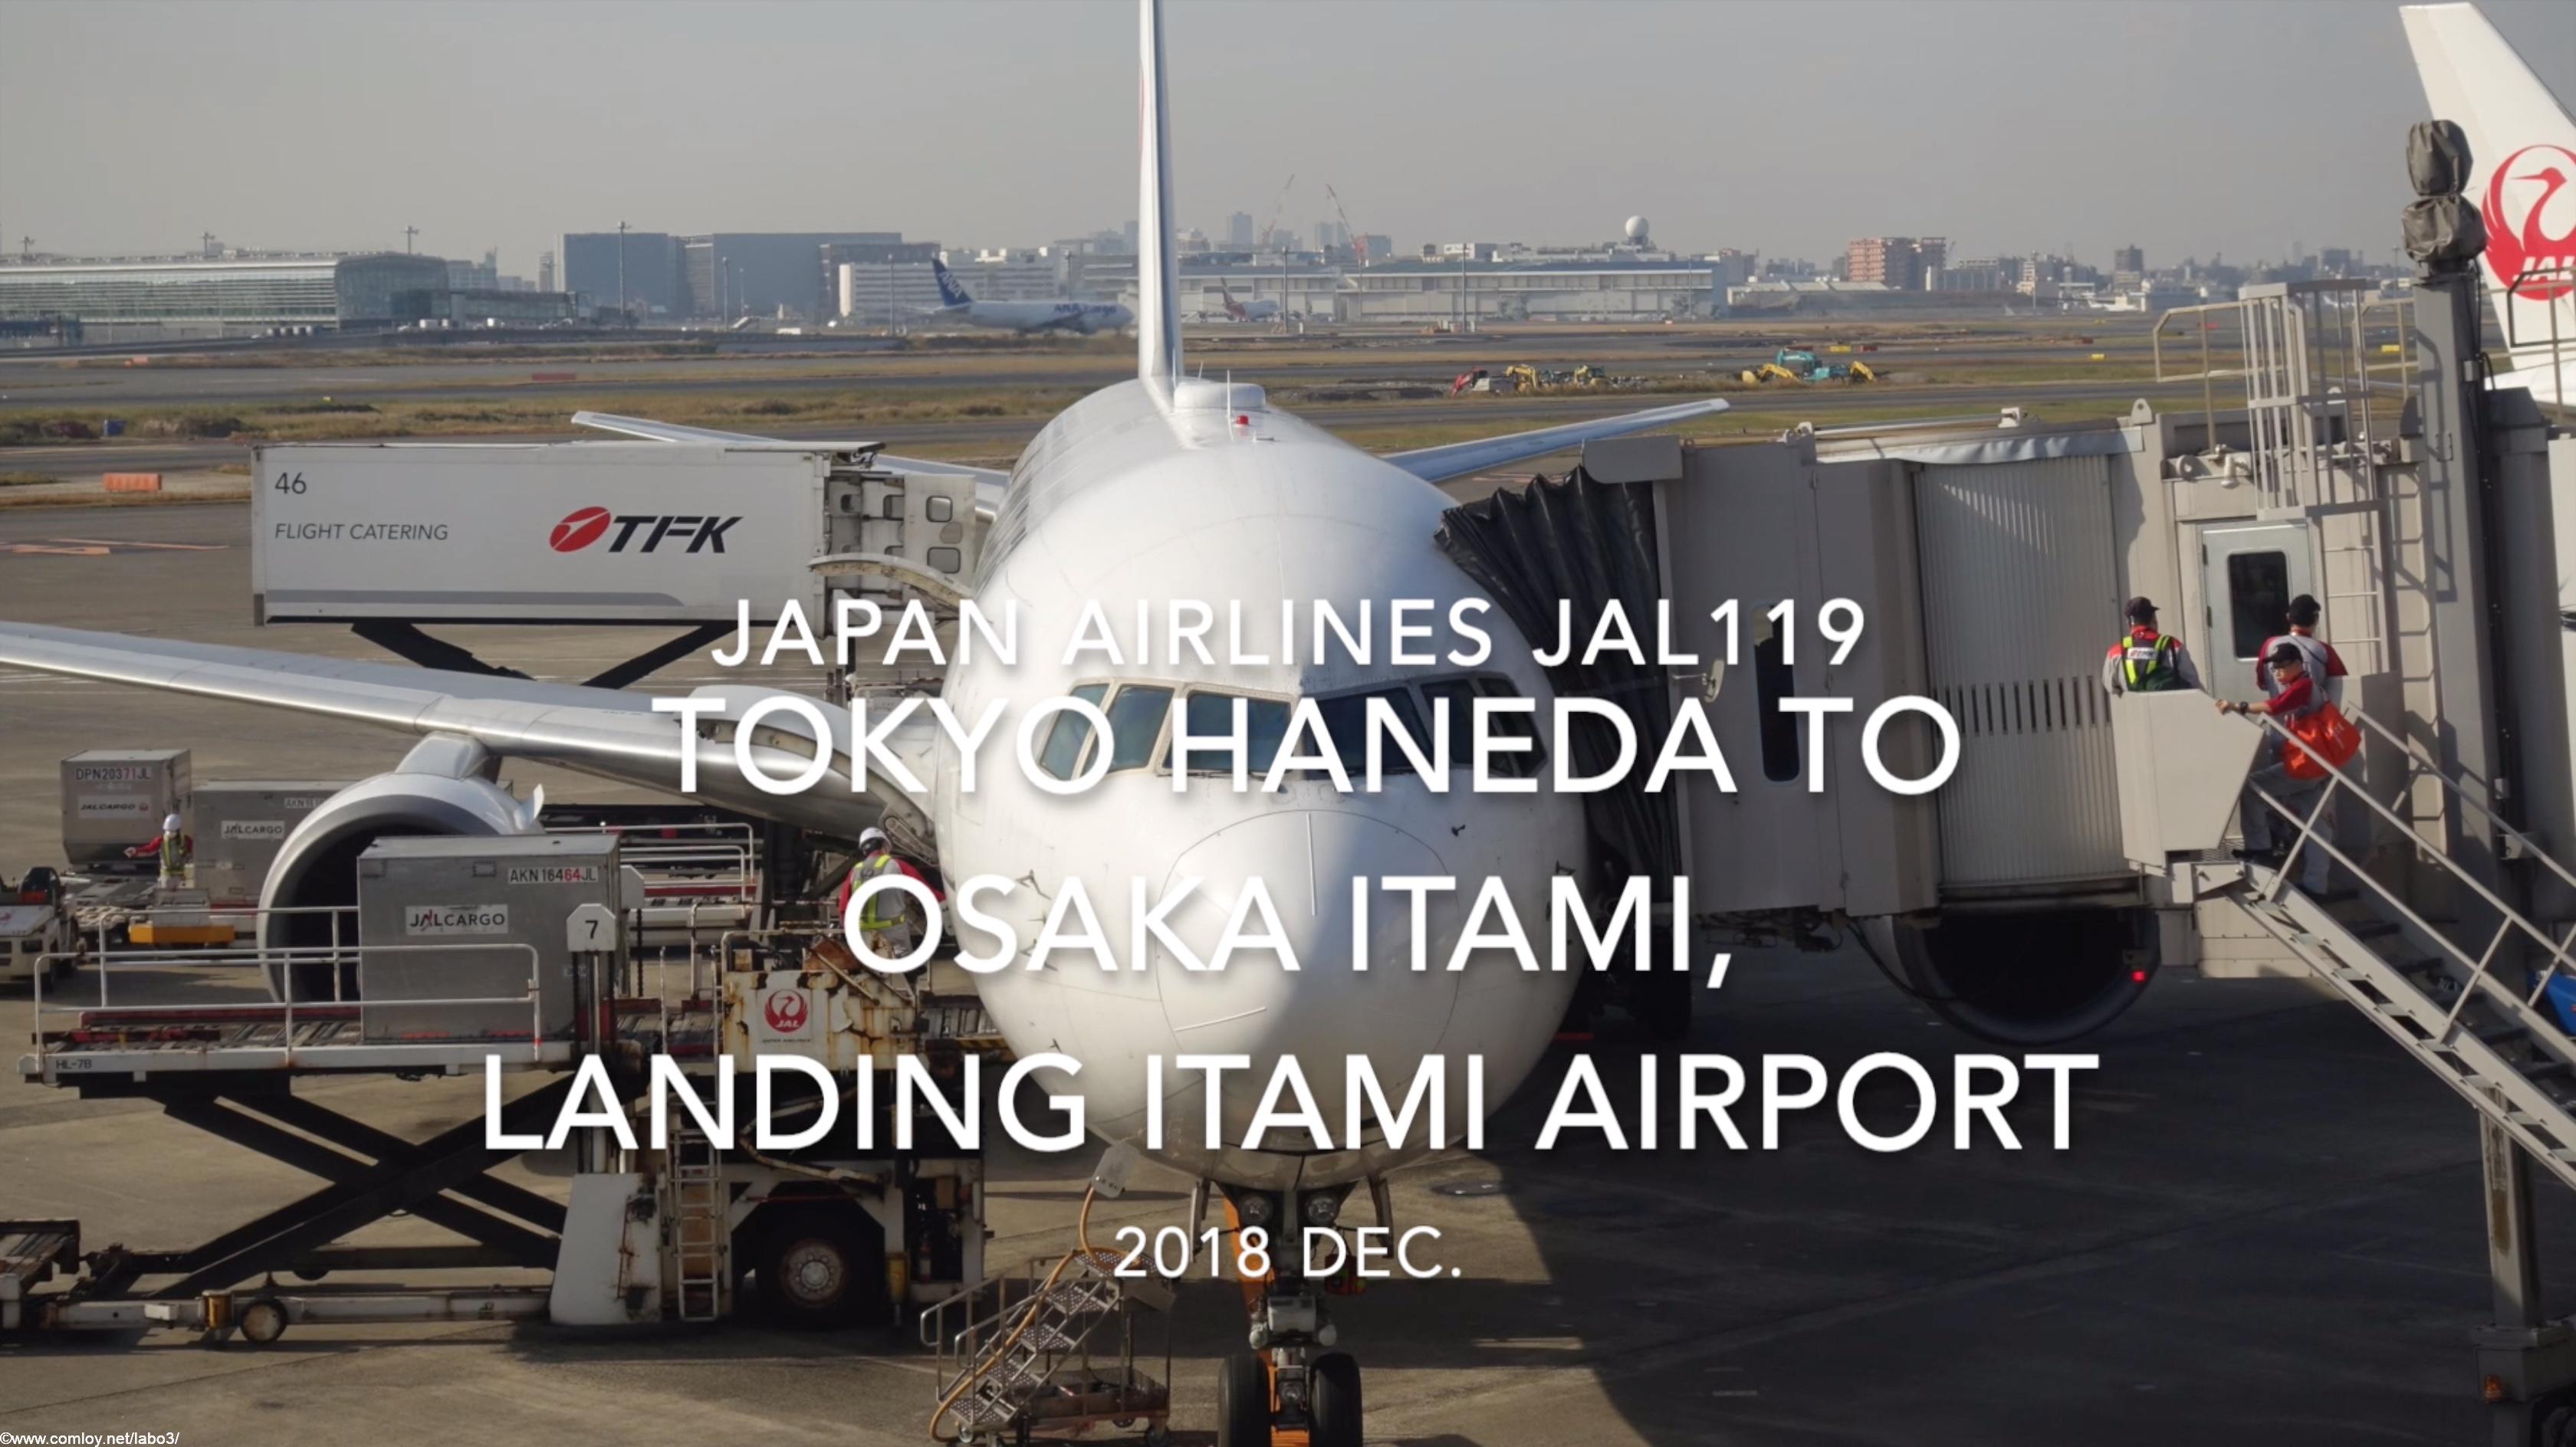 【機内から離着陸映像】2018 Dec. JAPAN Airlines JAL119 TOKYO HANEDA to OSAKA ITAMI, Landing ITAMI Airport 日本航空 羽田 - 伊丹 伊丹空港着陸